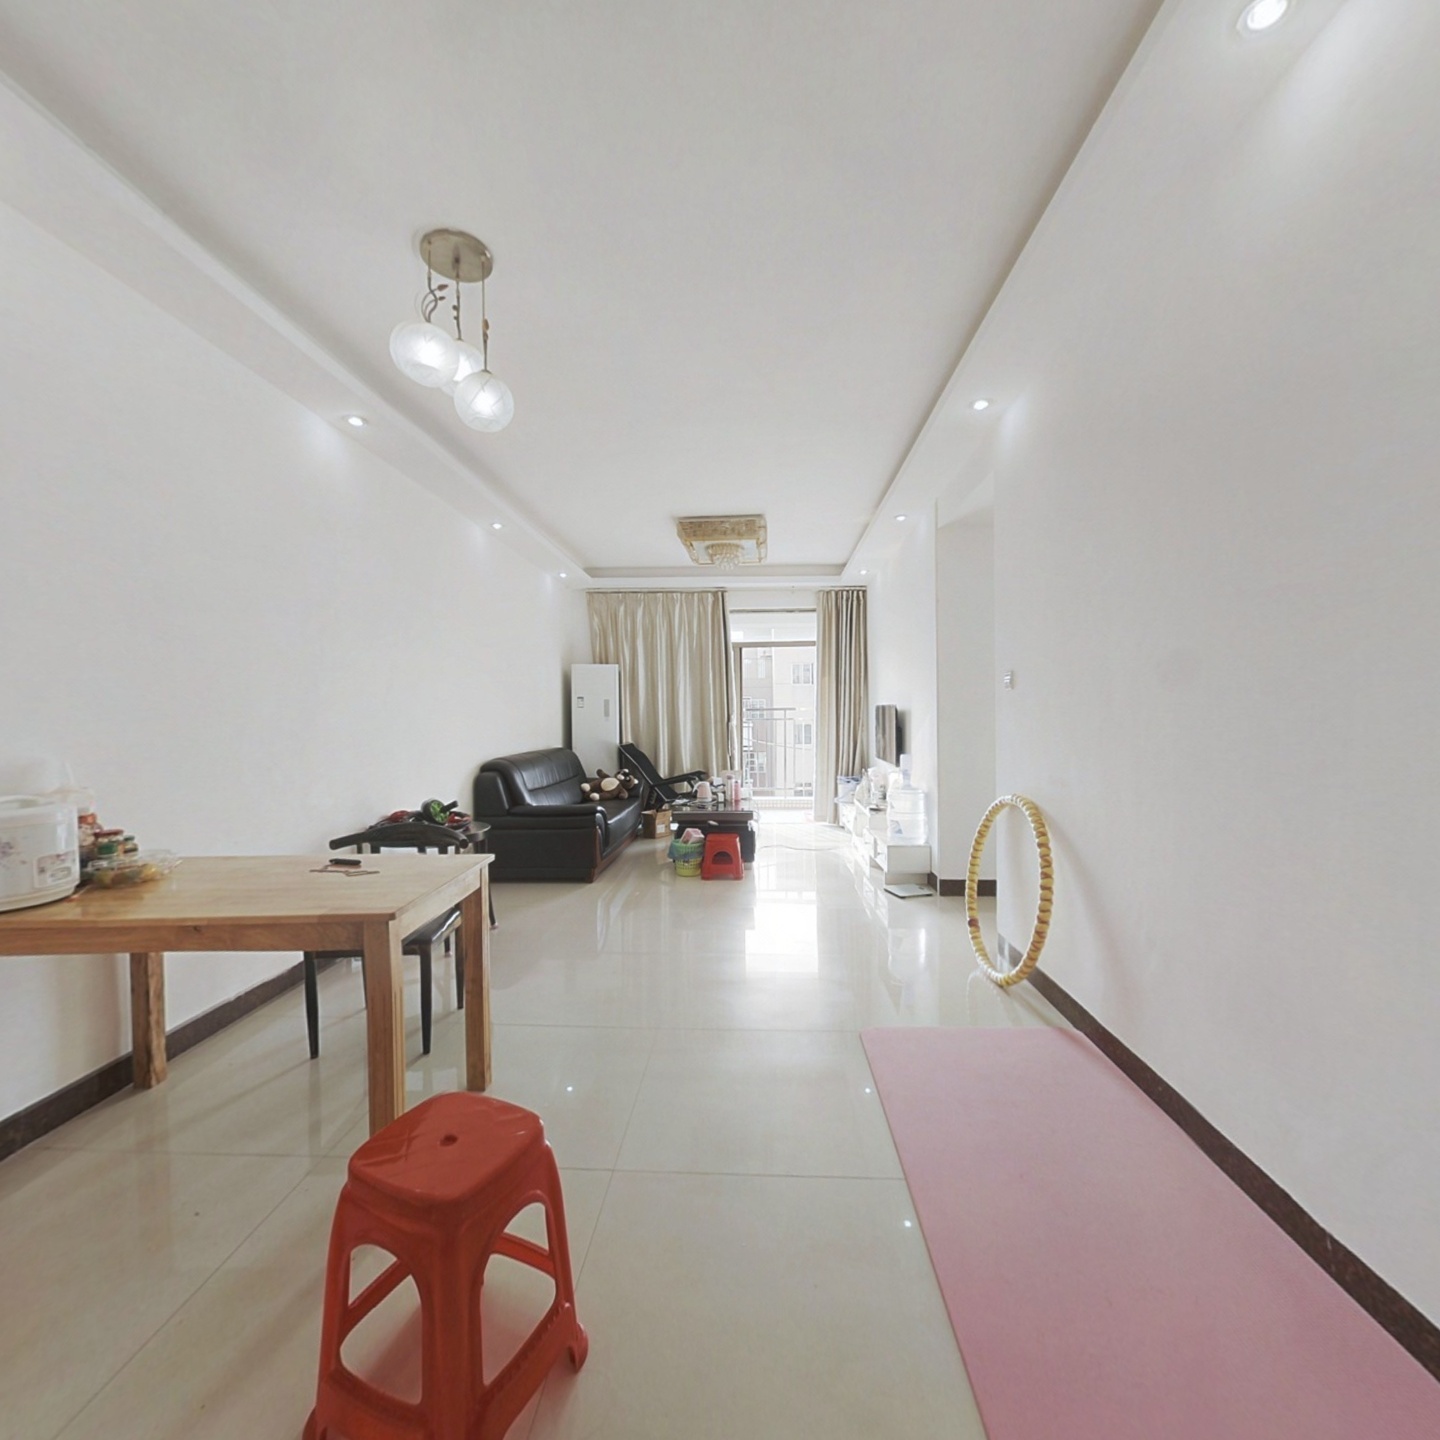 斗门区 精装三房05年后房子 可以VR看房业主诚心出售